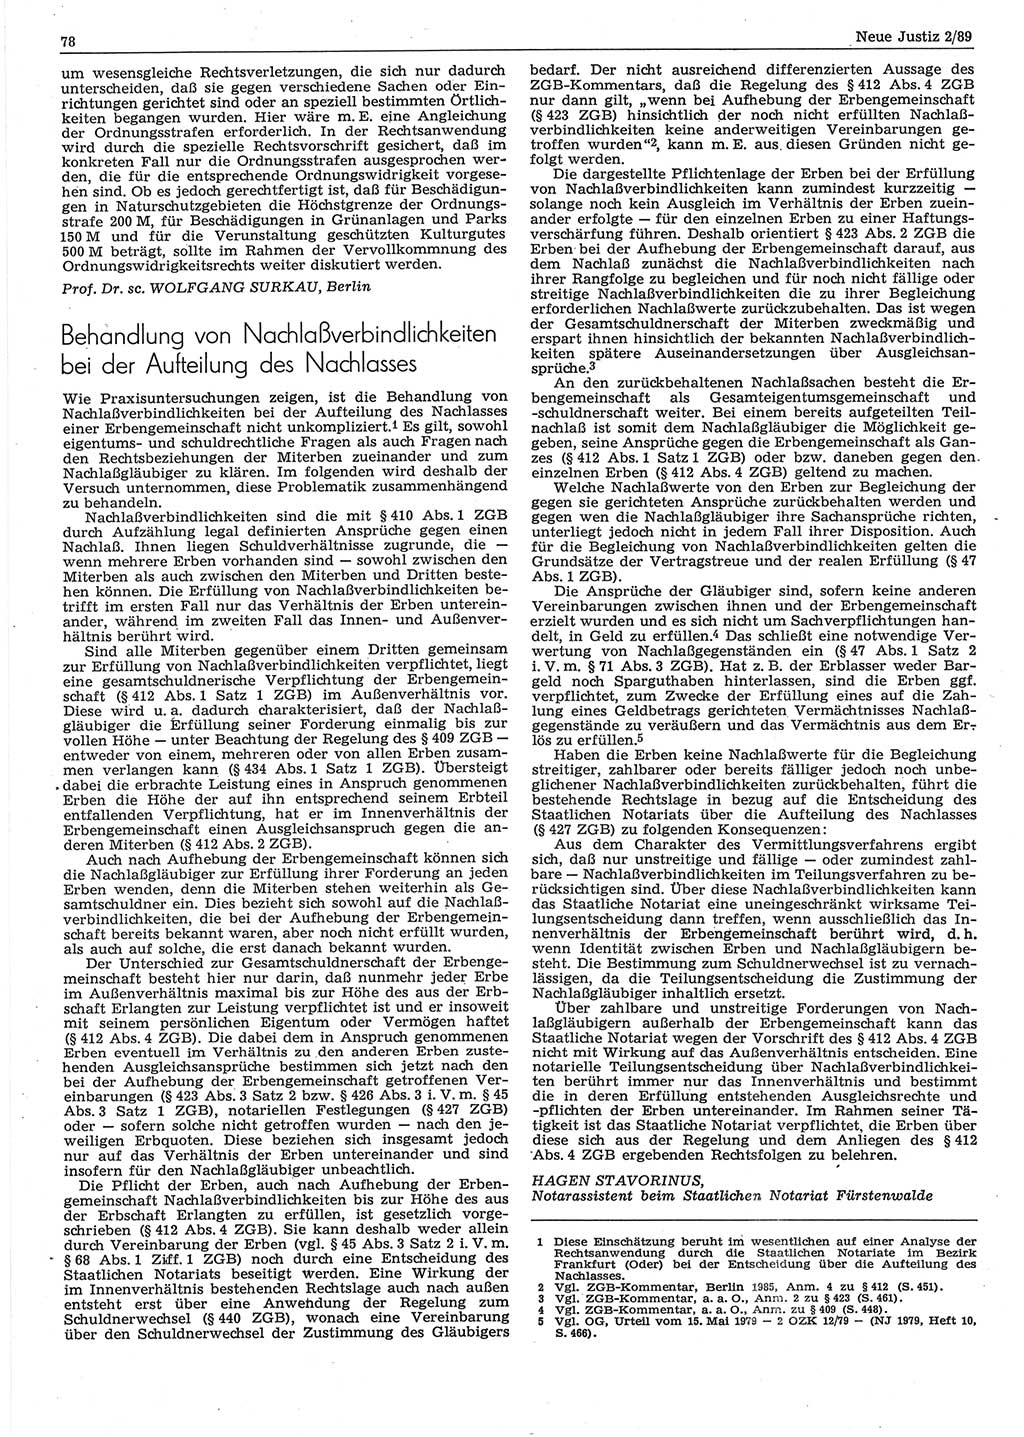 Neue Justiz (NJ), Zeitschrift für sozialistisches Recht und Gesetzlichkeit [Deutsche Demokratische Republik (DDR)], 43. Jahrgang 1989, Seite 78 (NJ DDR 1989, S. 78)